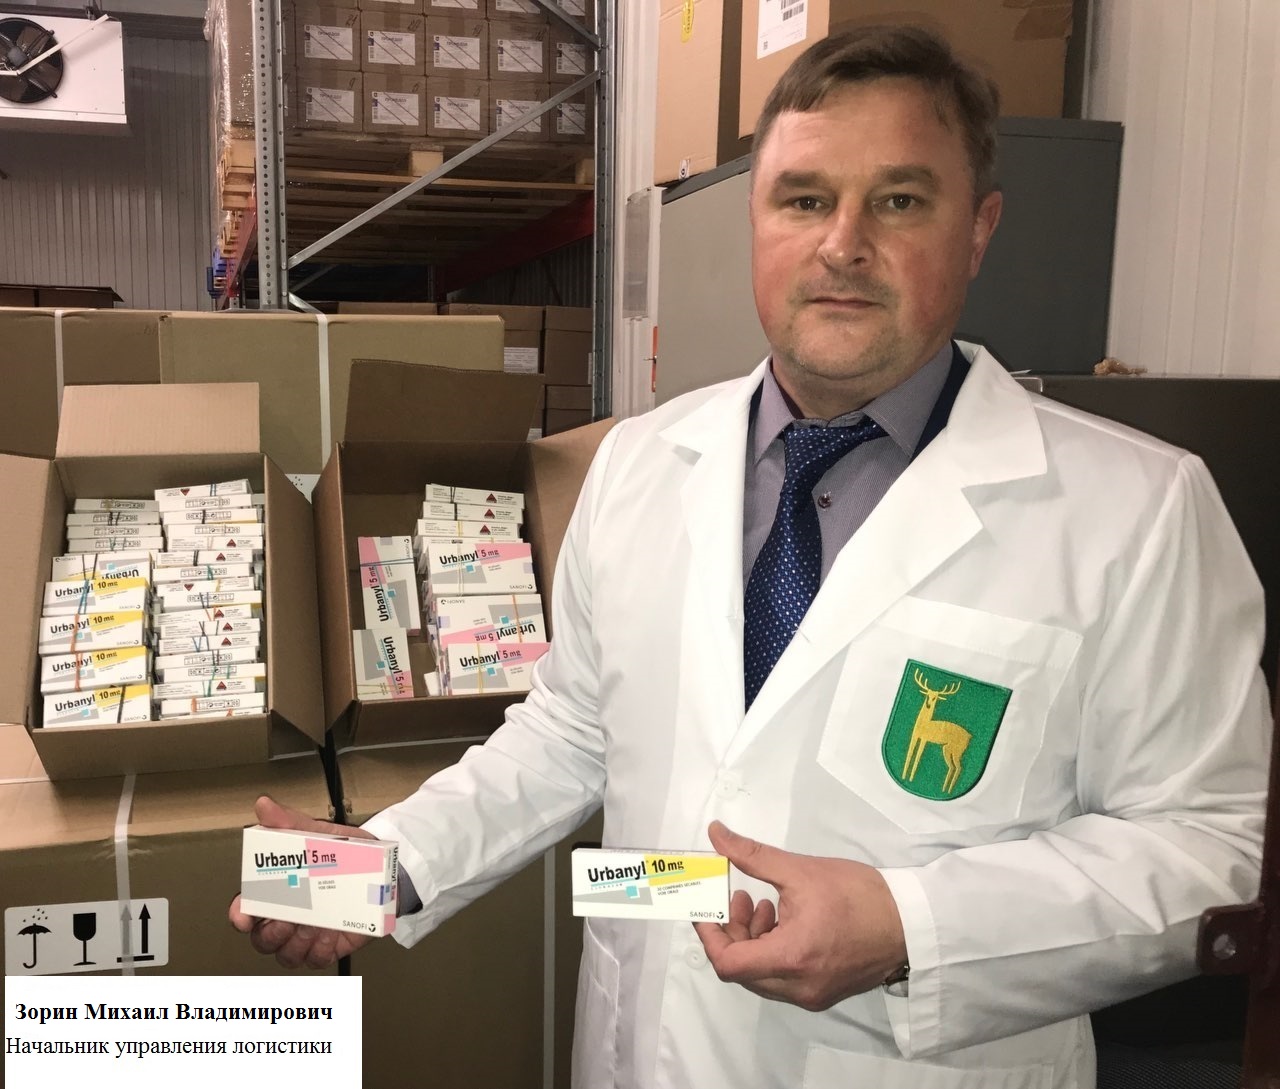 ФГУП «Московский эндокринный завод» осуществил ввоз 3000 упаковок незарегистрированного лекарственного препарата с МНН Клобазам для лечения пациентов с эпилепсией